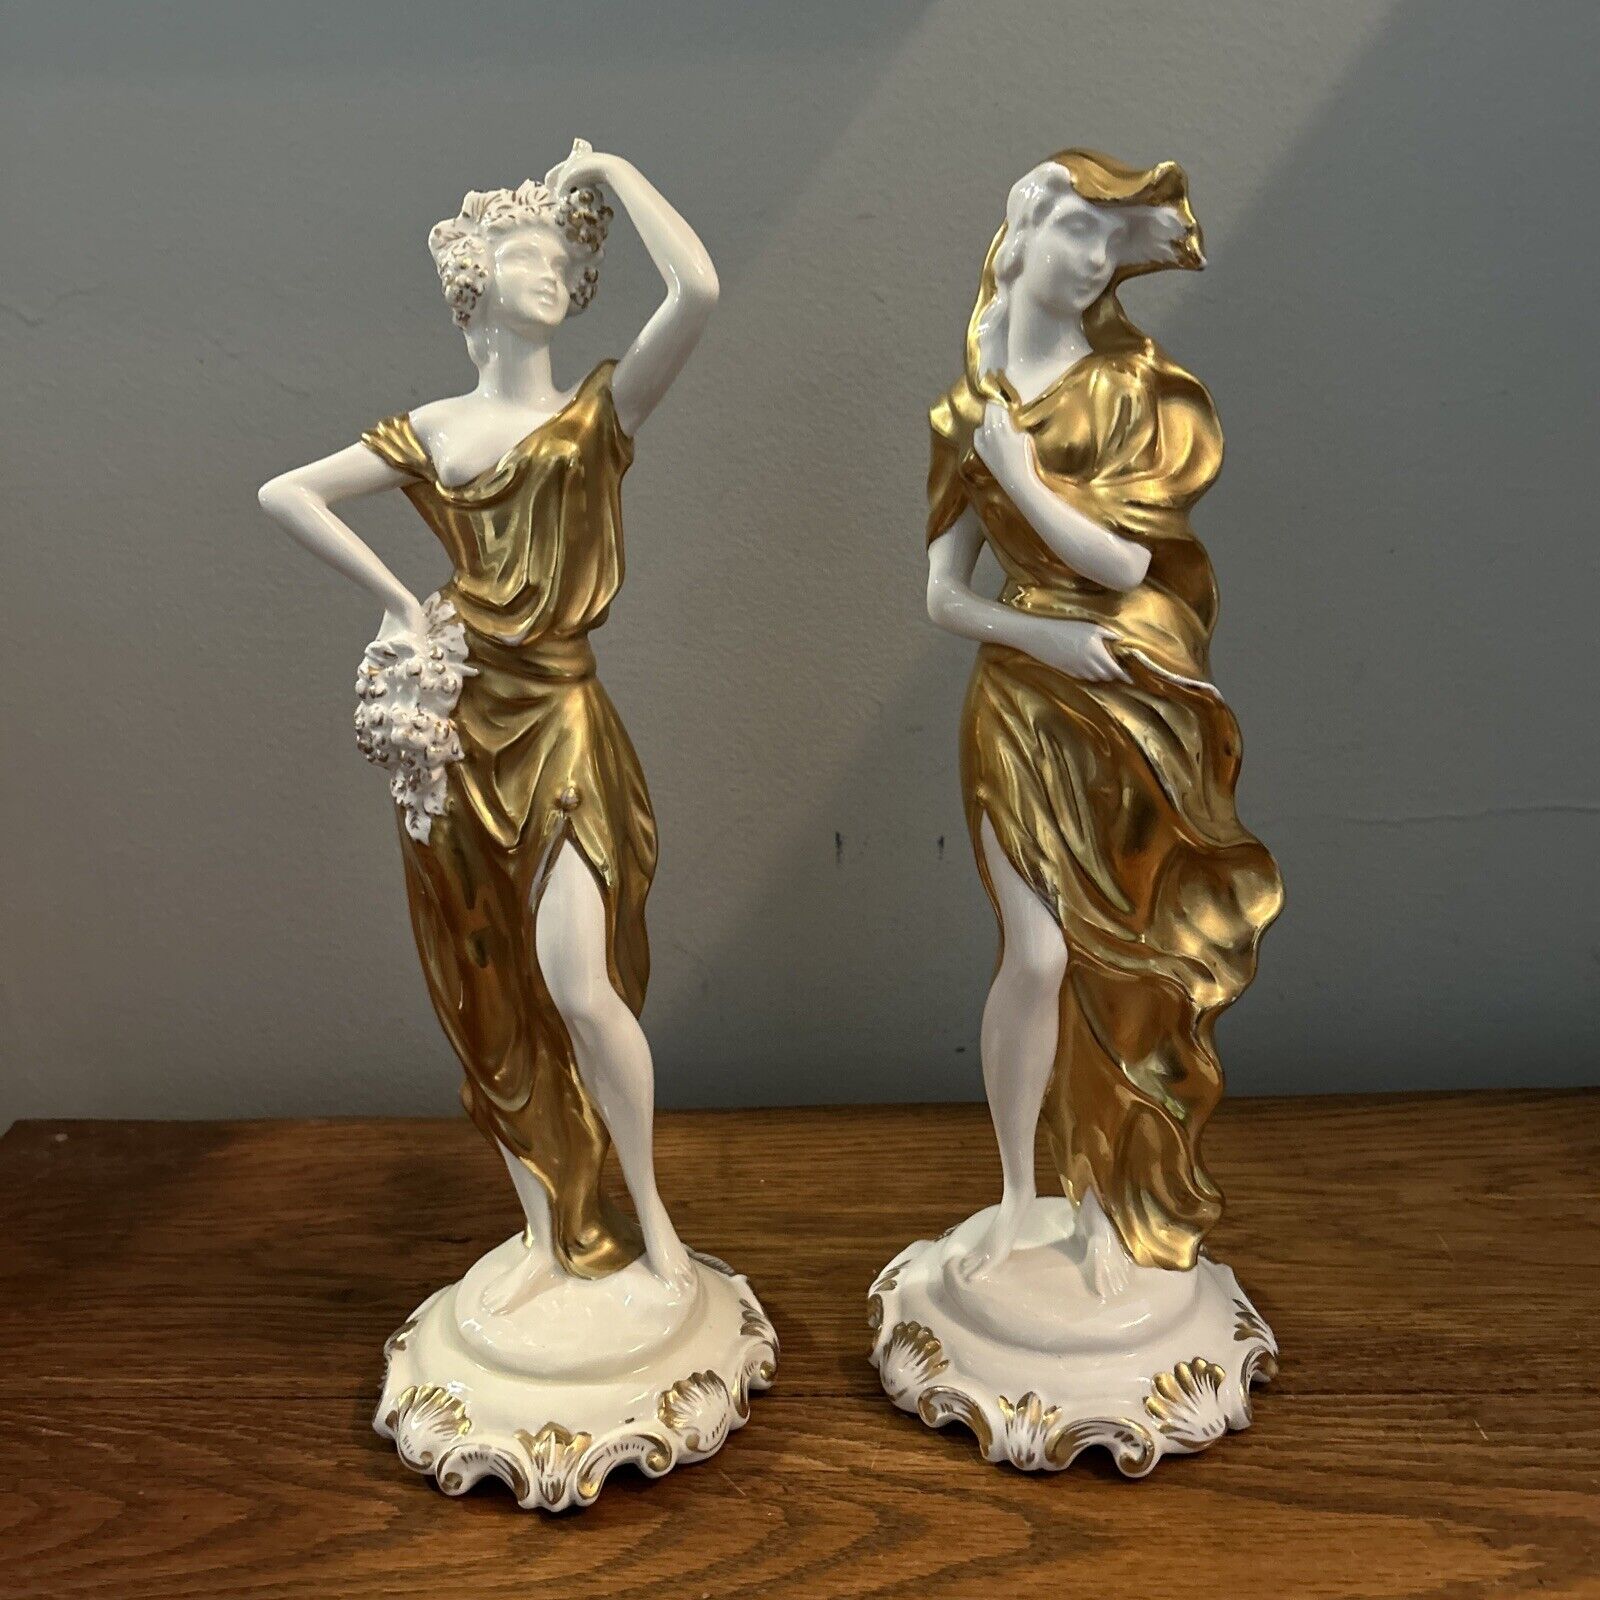 Pair Of Italian 12” Capodimonte Roman Female Figurines